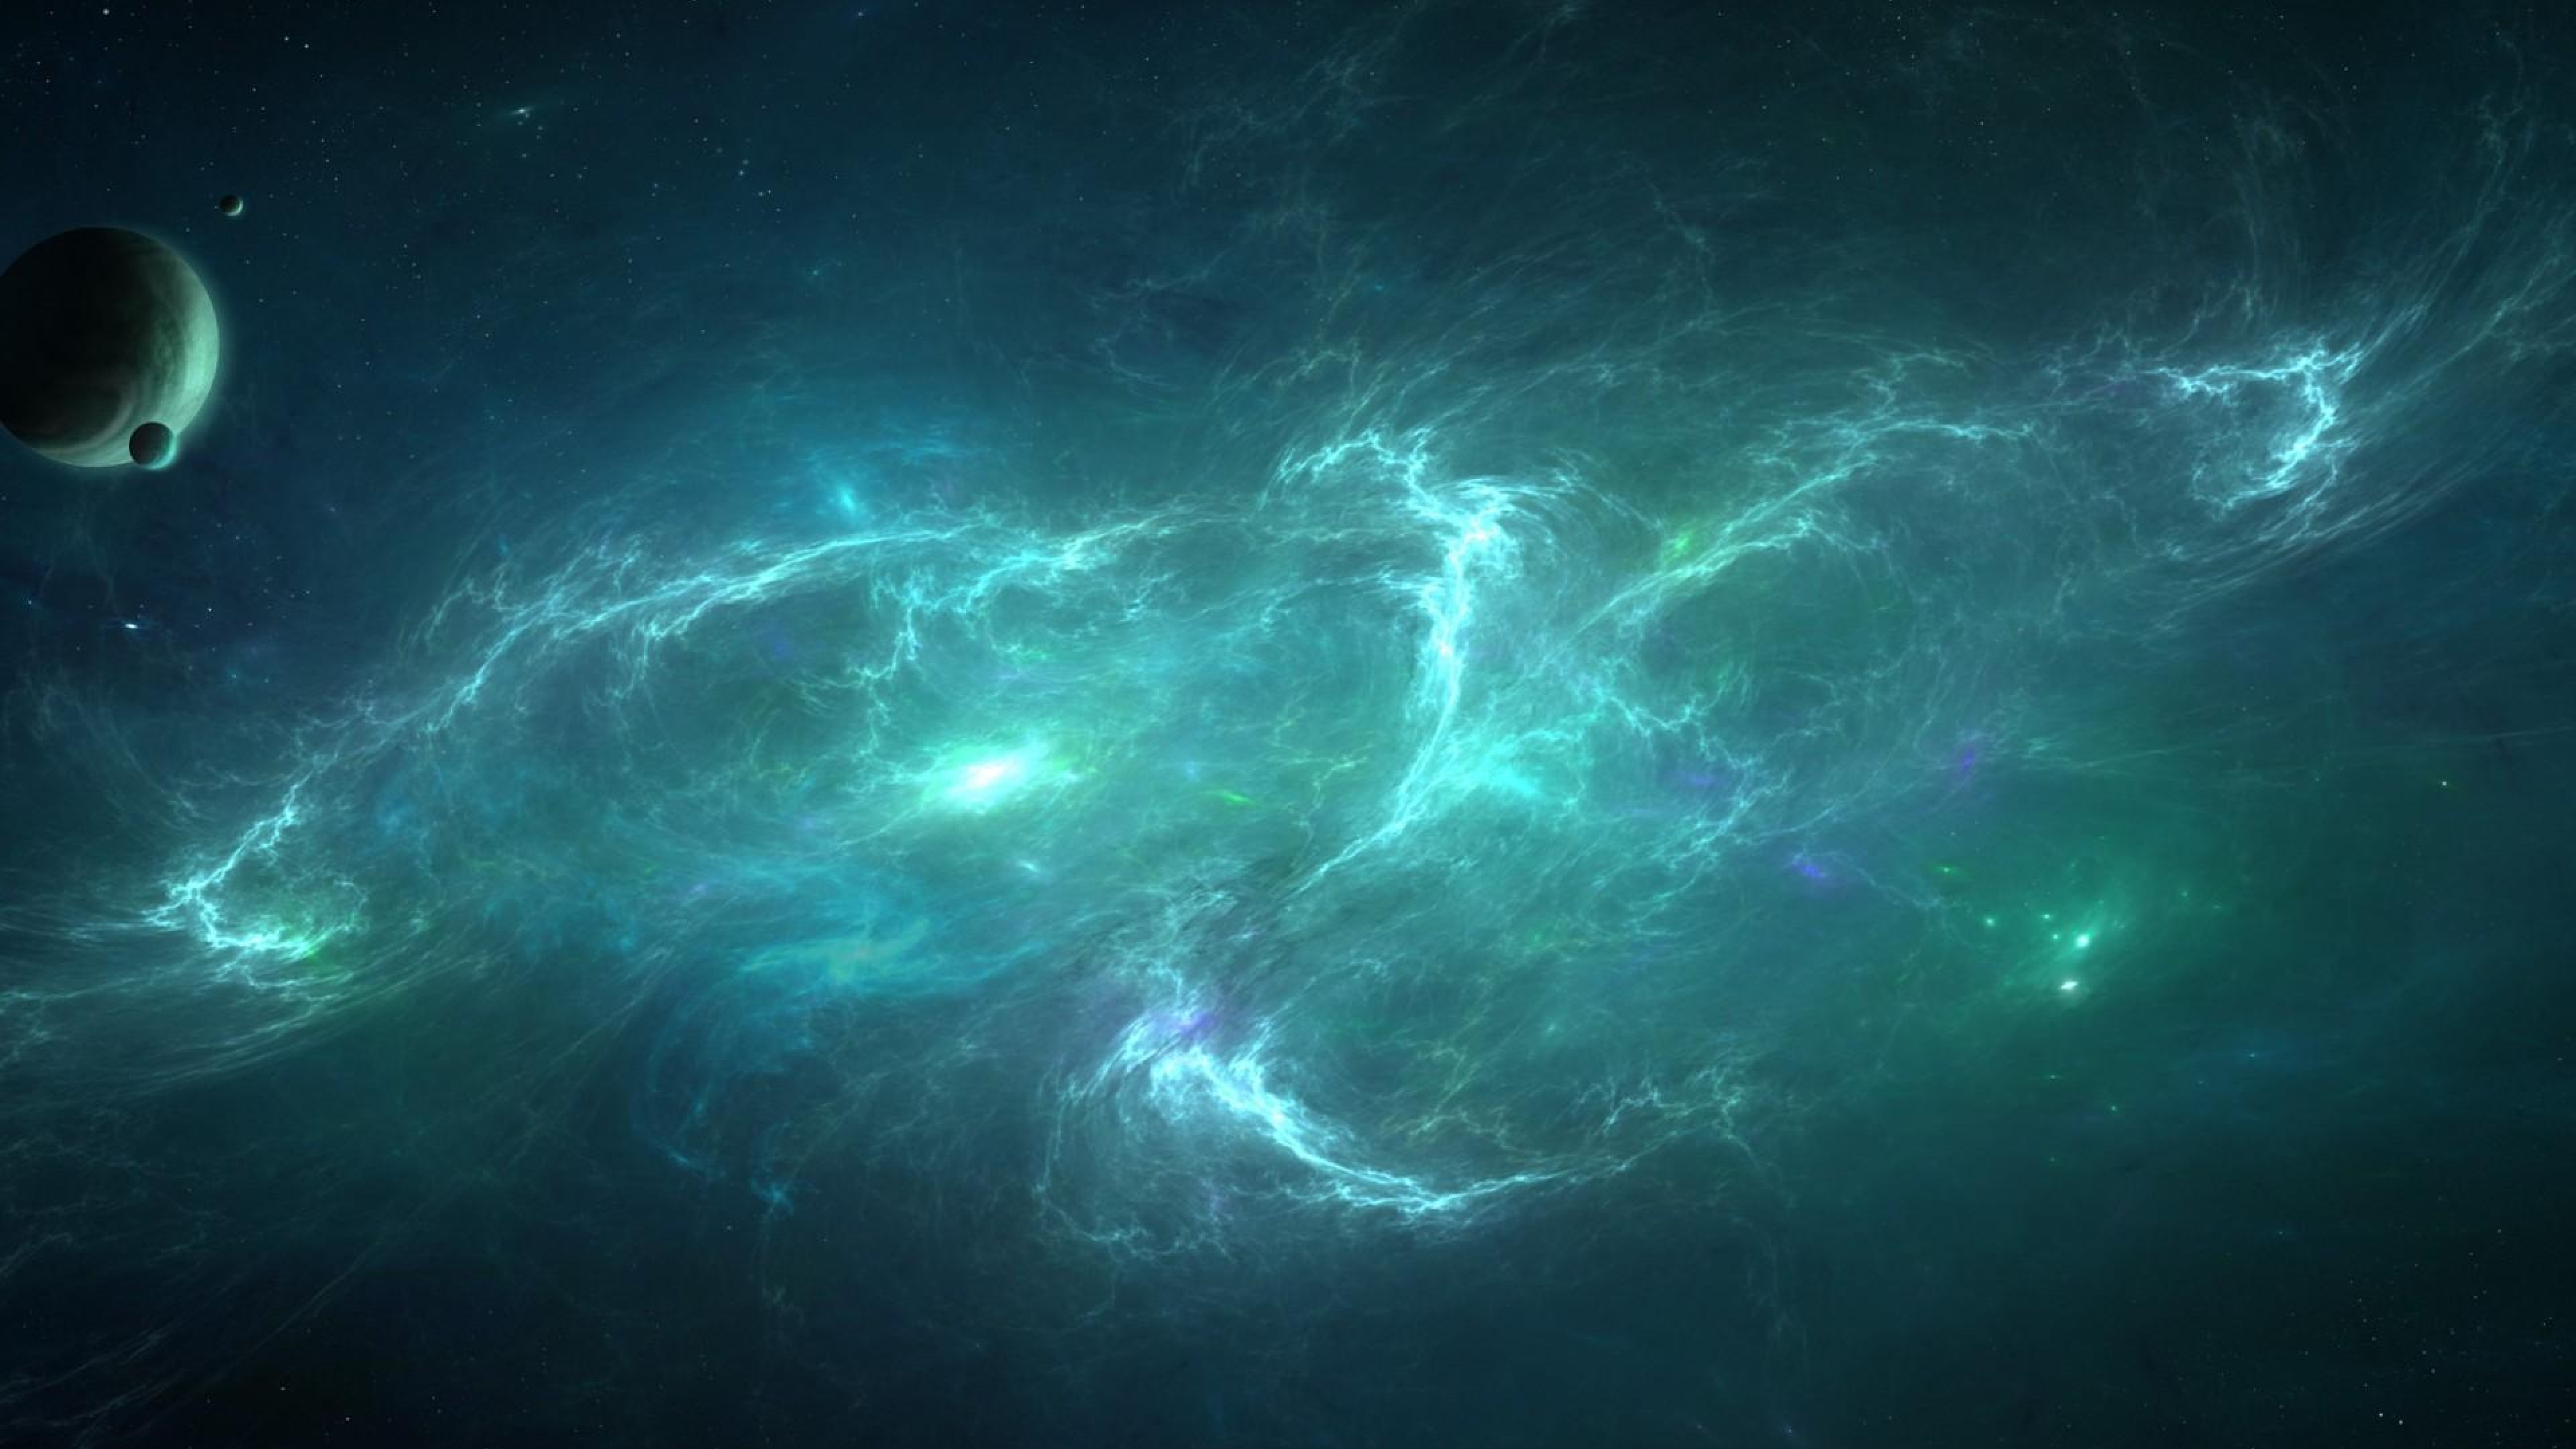  Planets Nebula Light Swirl Wallpaper Background 4K Ultra HD